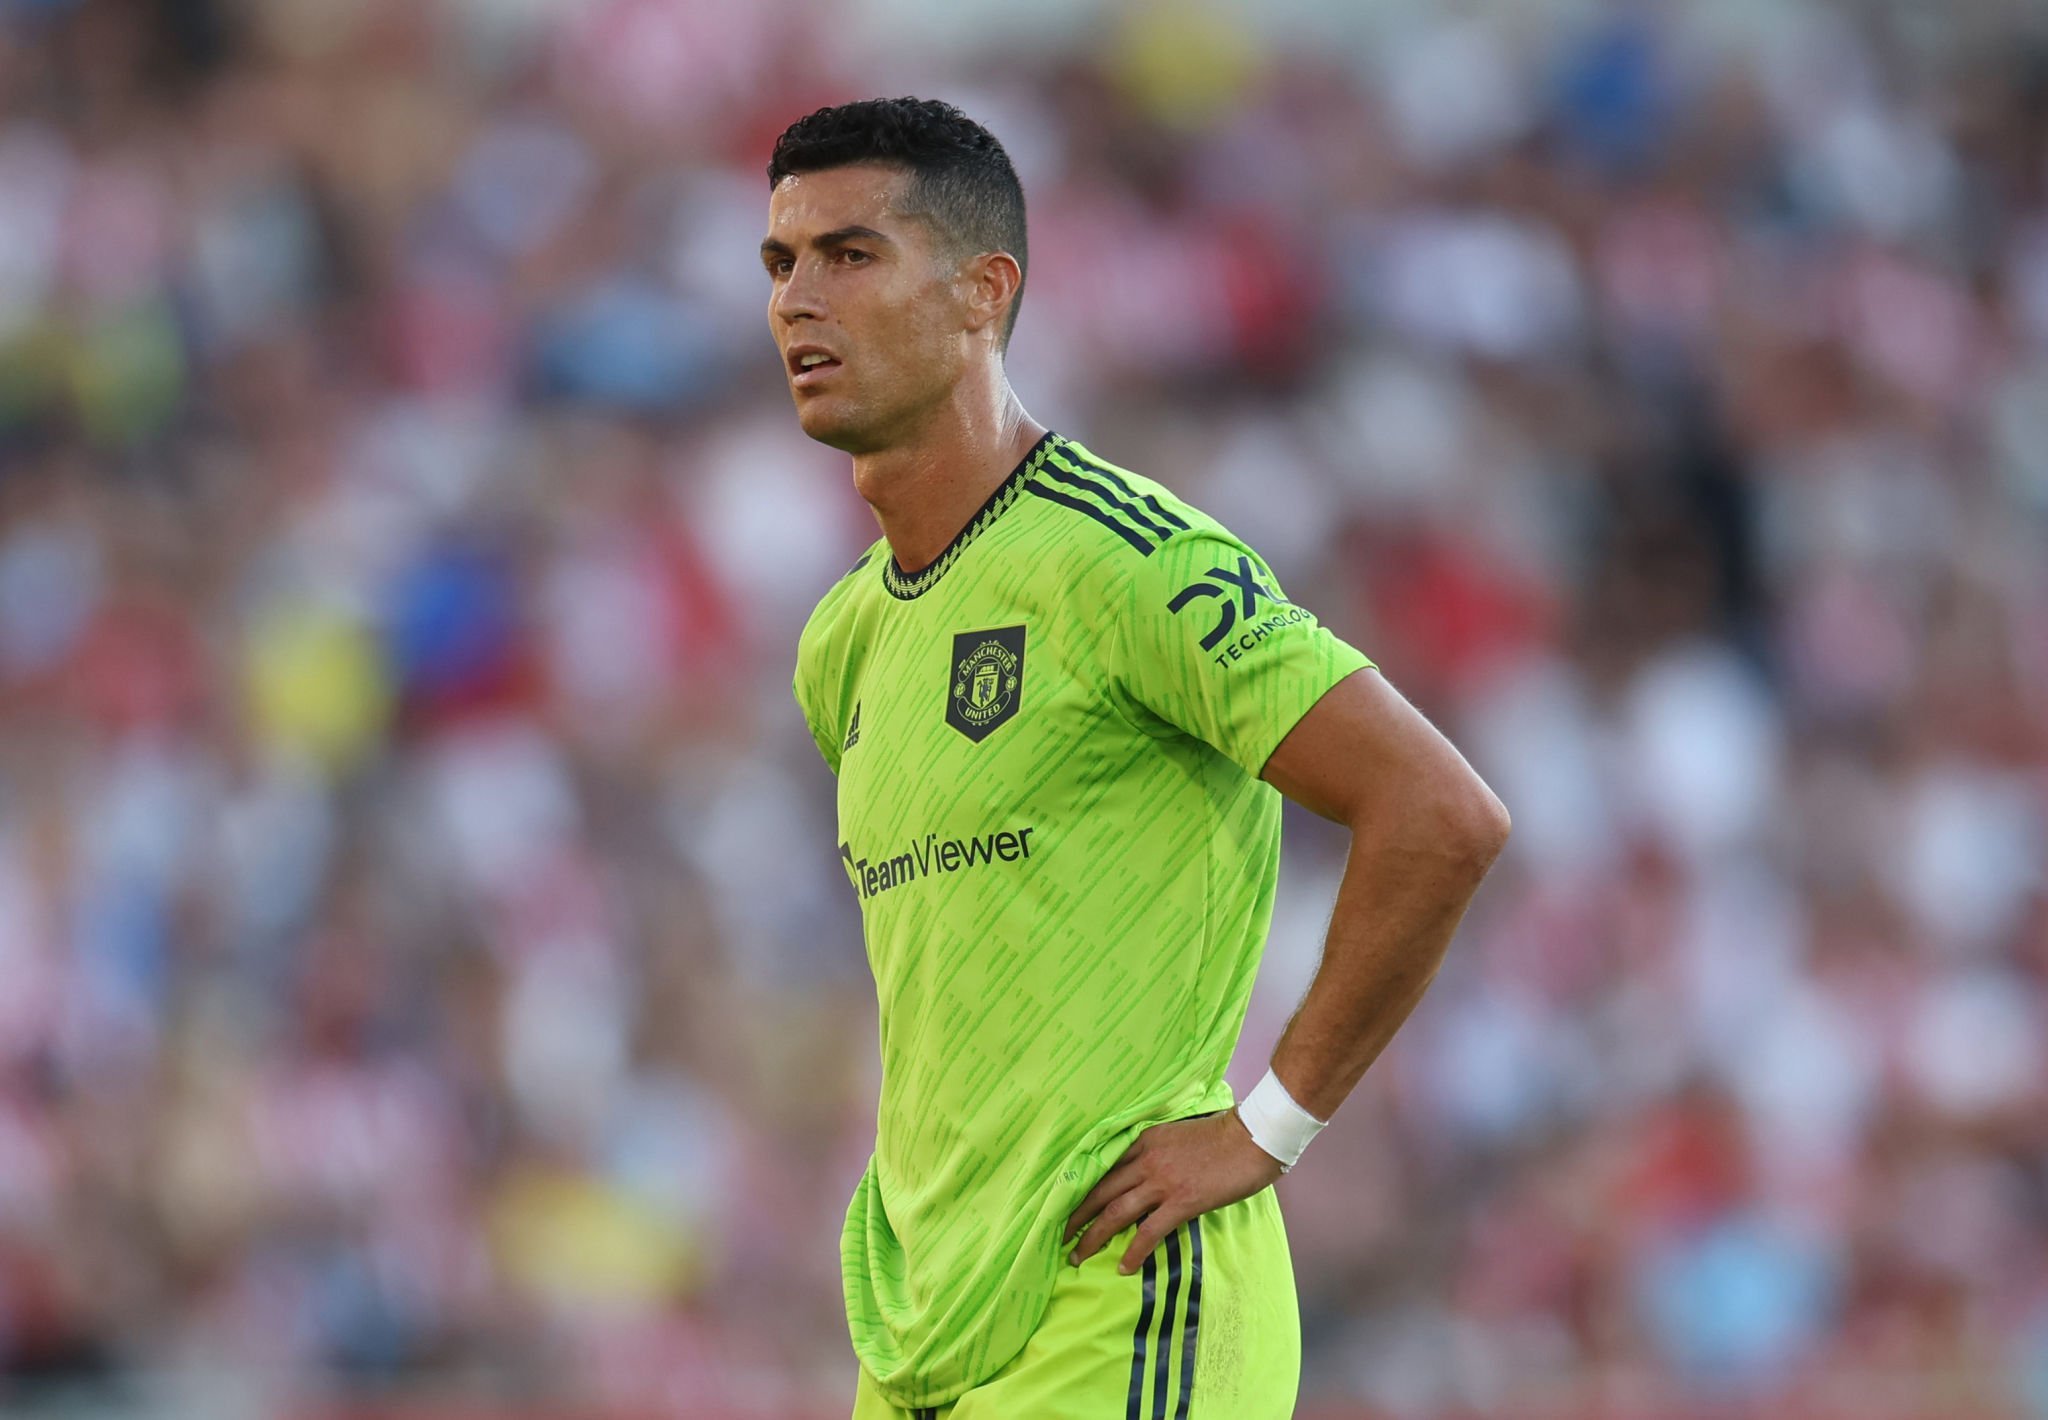 Manchester United menace Ronaldo de résilier son contrat s’il ne change pas d’attitude￼